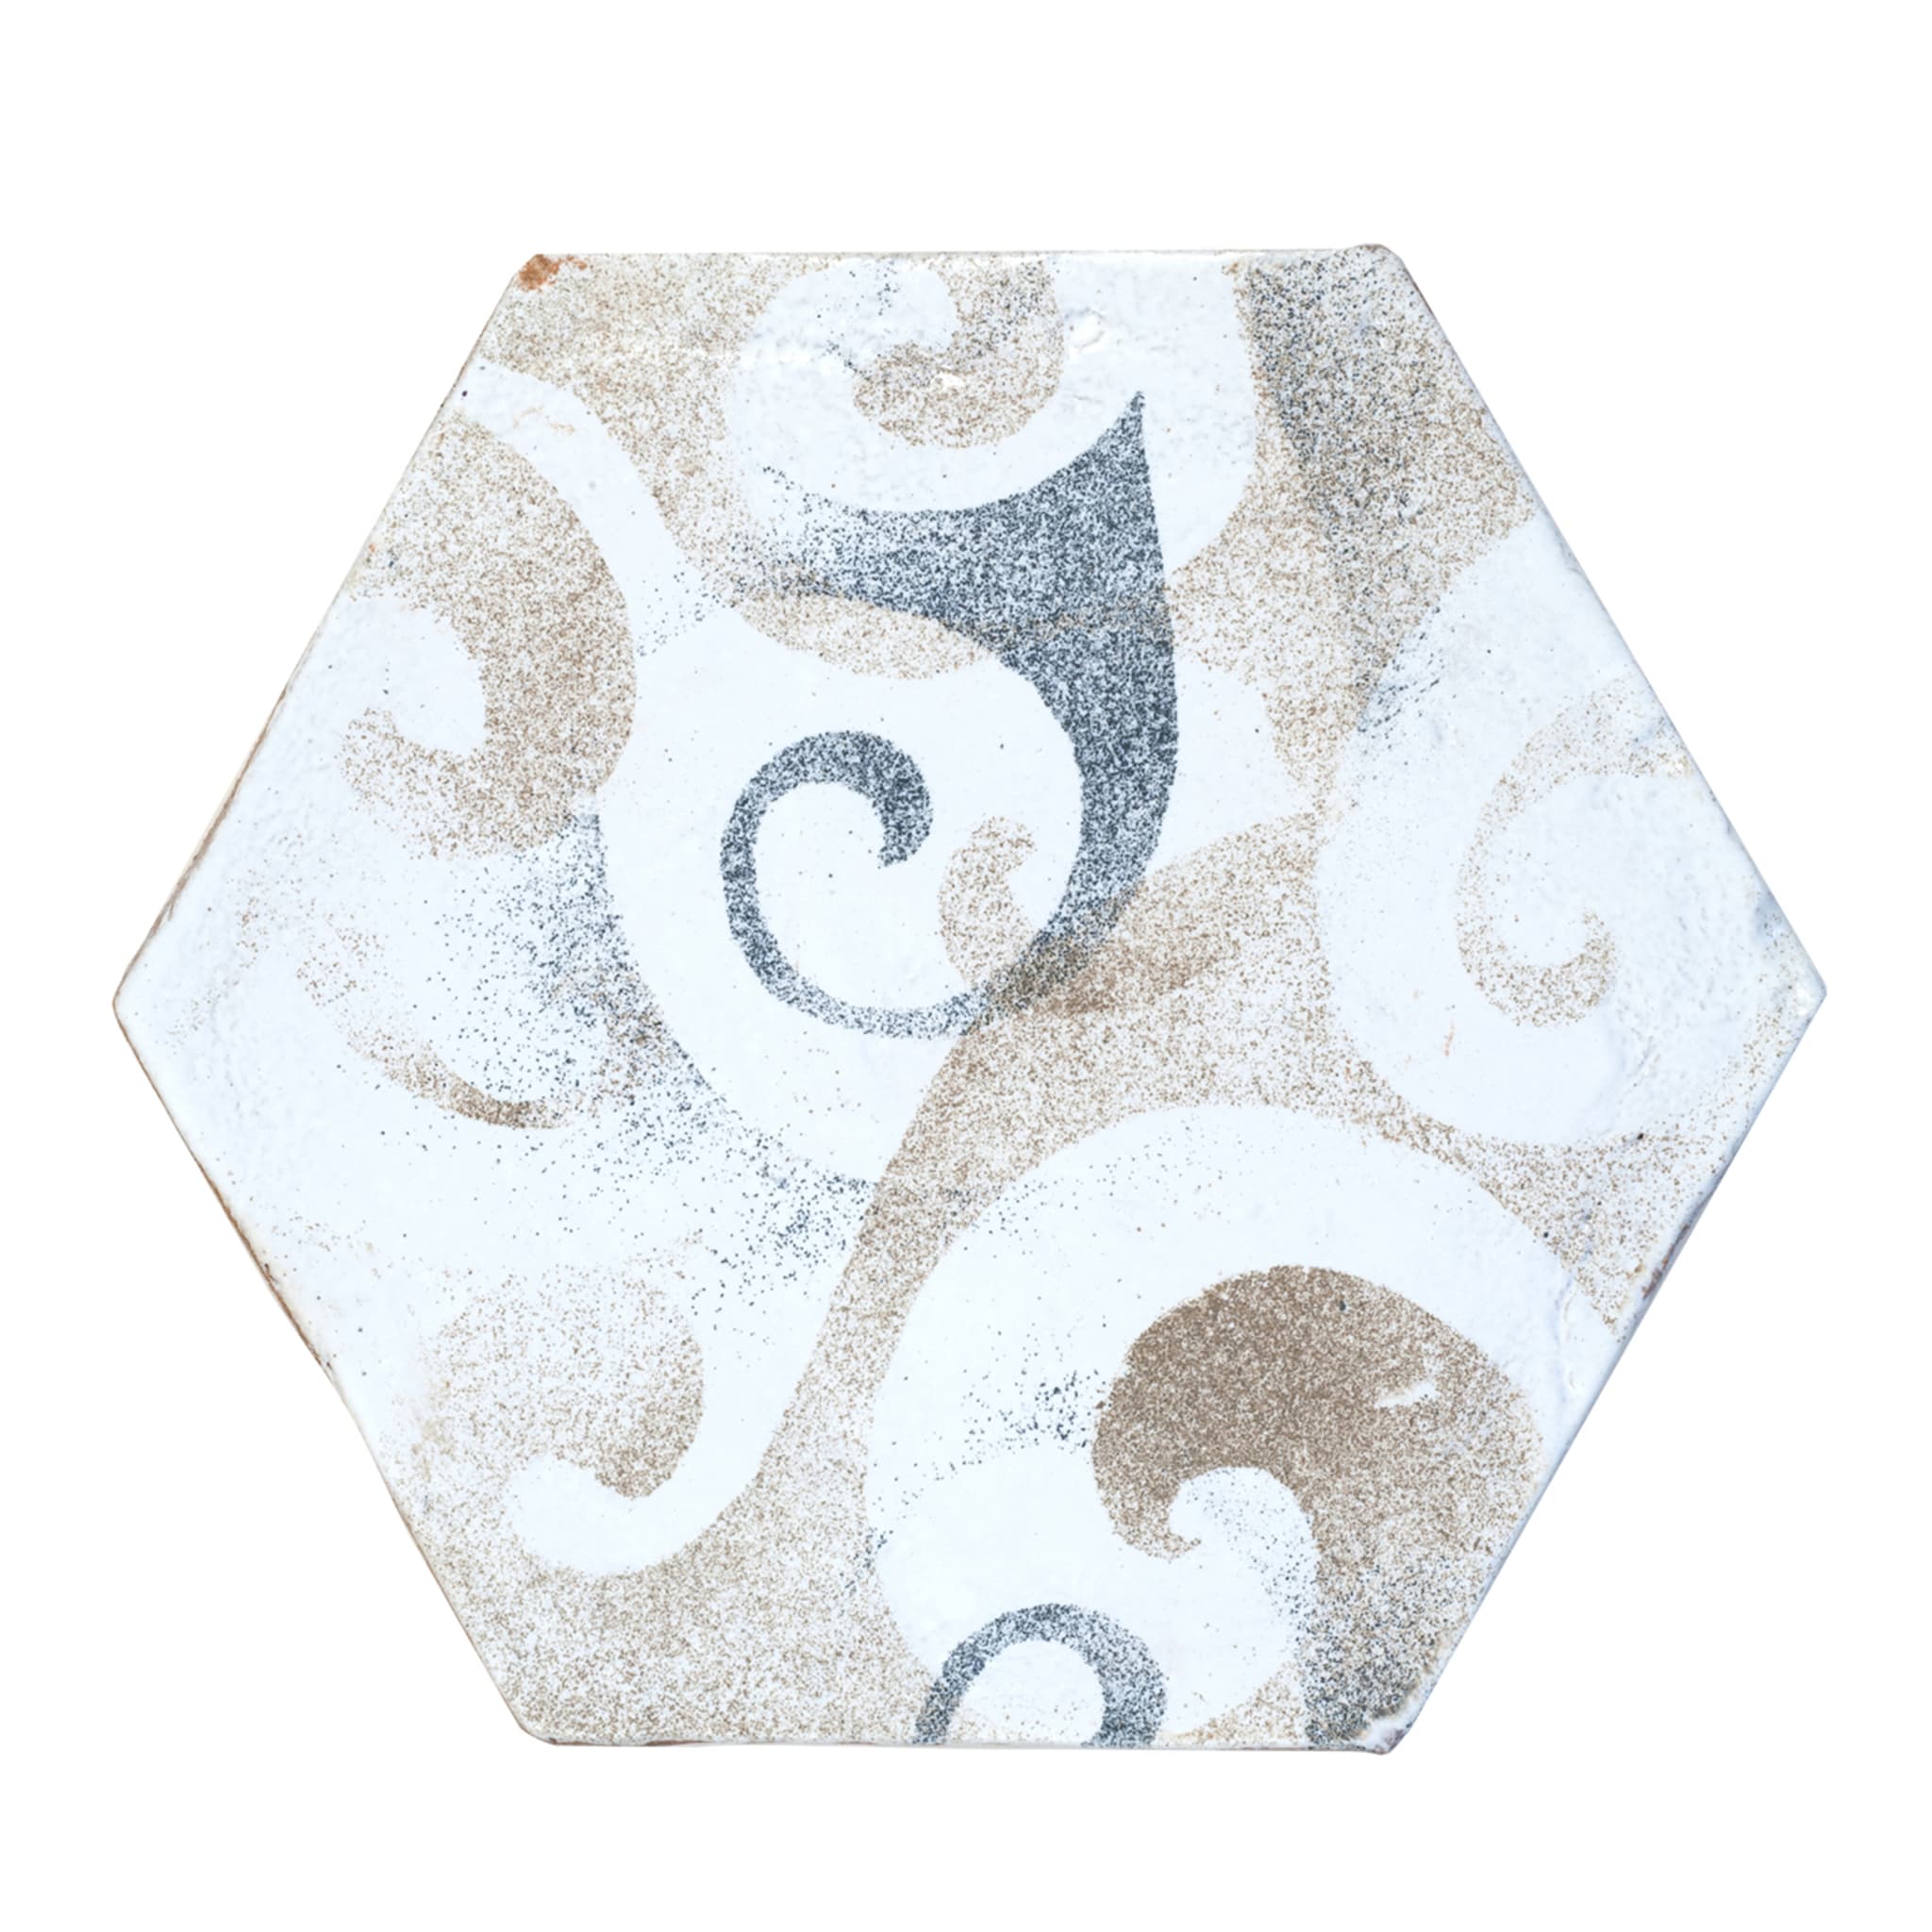 Barocco Jeu de 25 carreaux hexagonaux sable et fumée - Vue principale